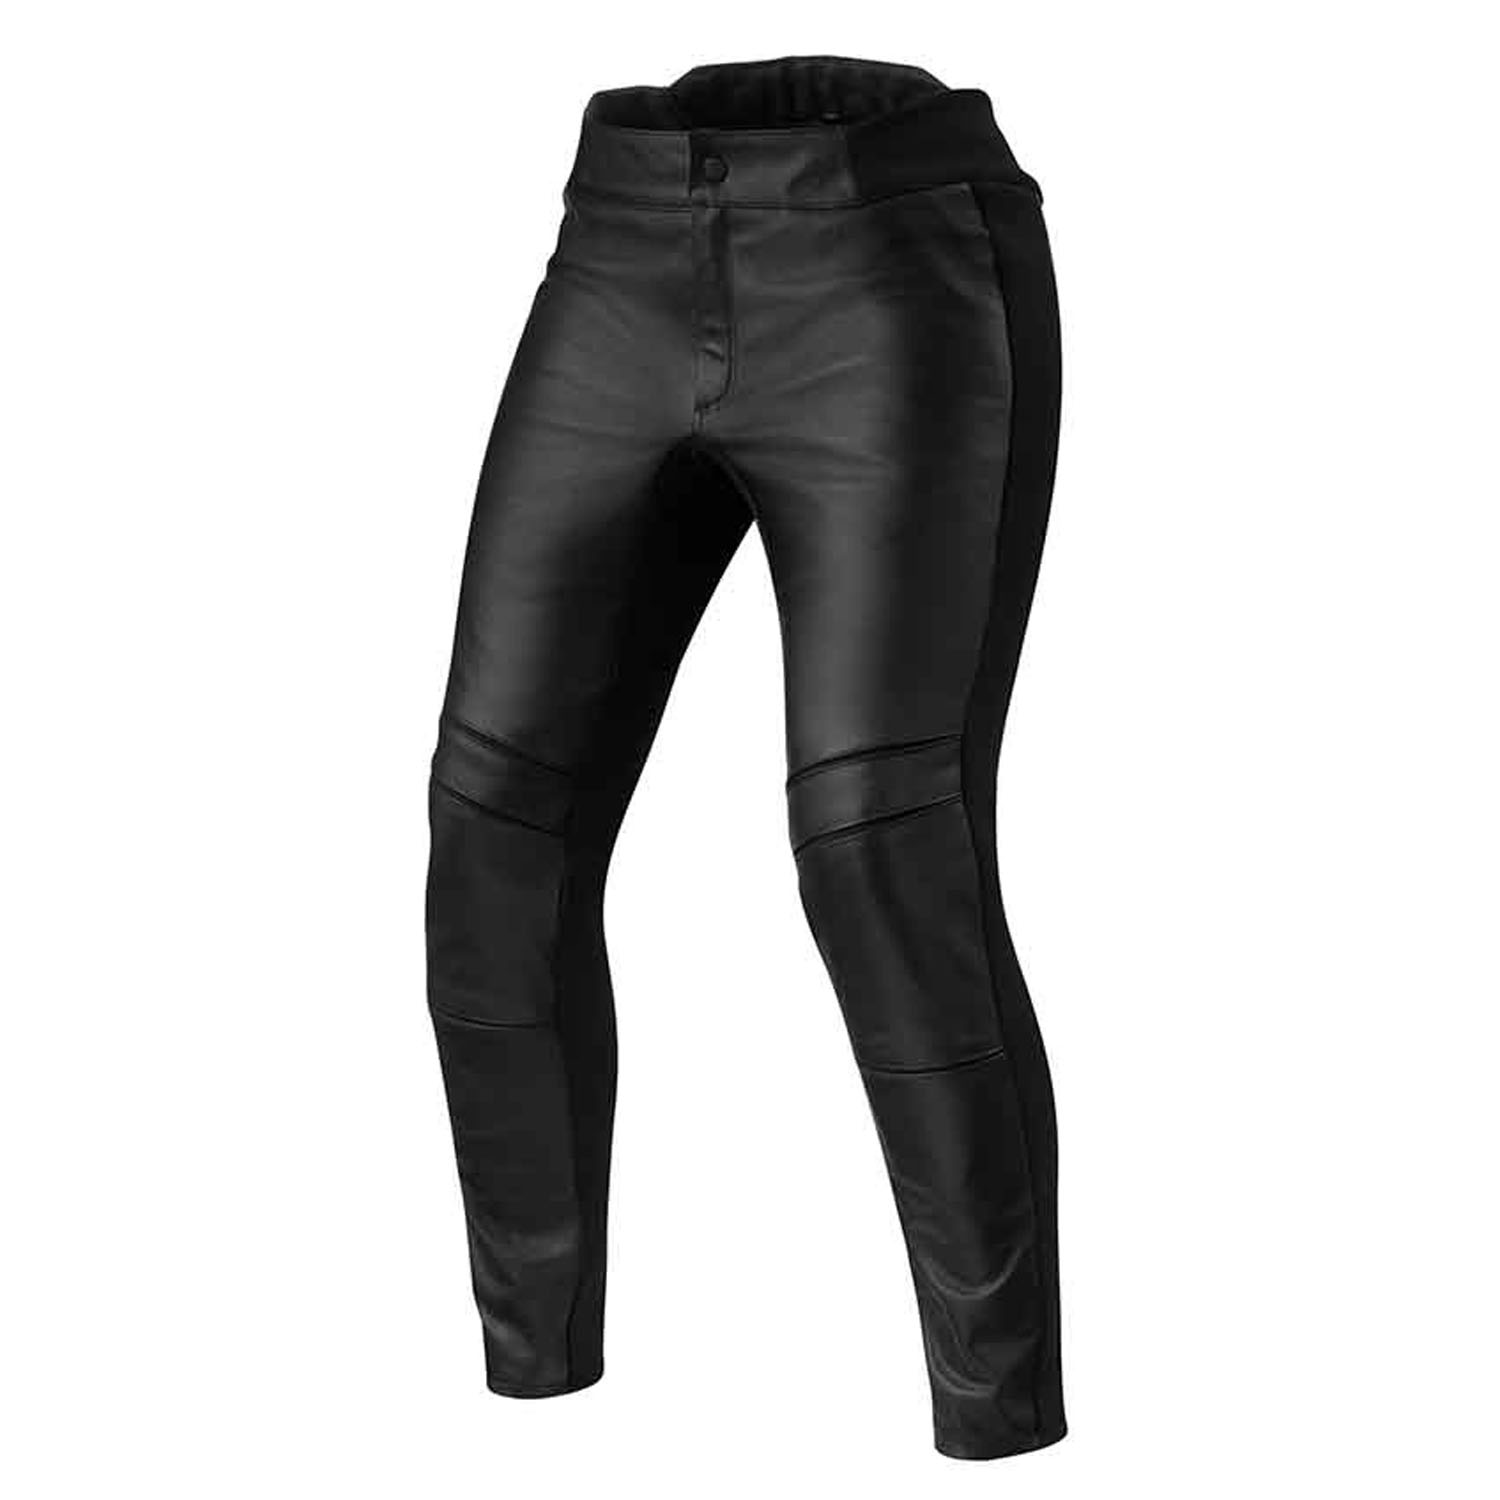 Image of REV'IT! Maci Ladies Black Standard Motorcycle Pants Size 40 EN